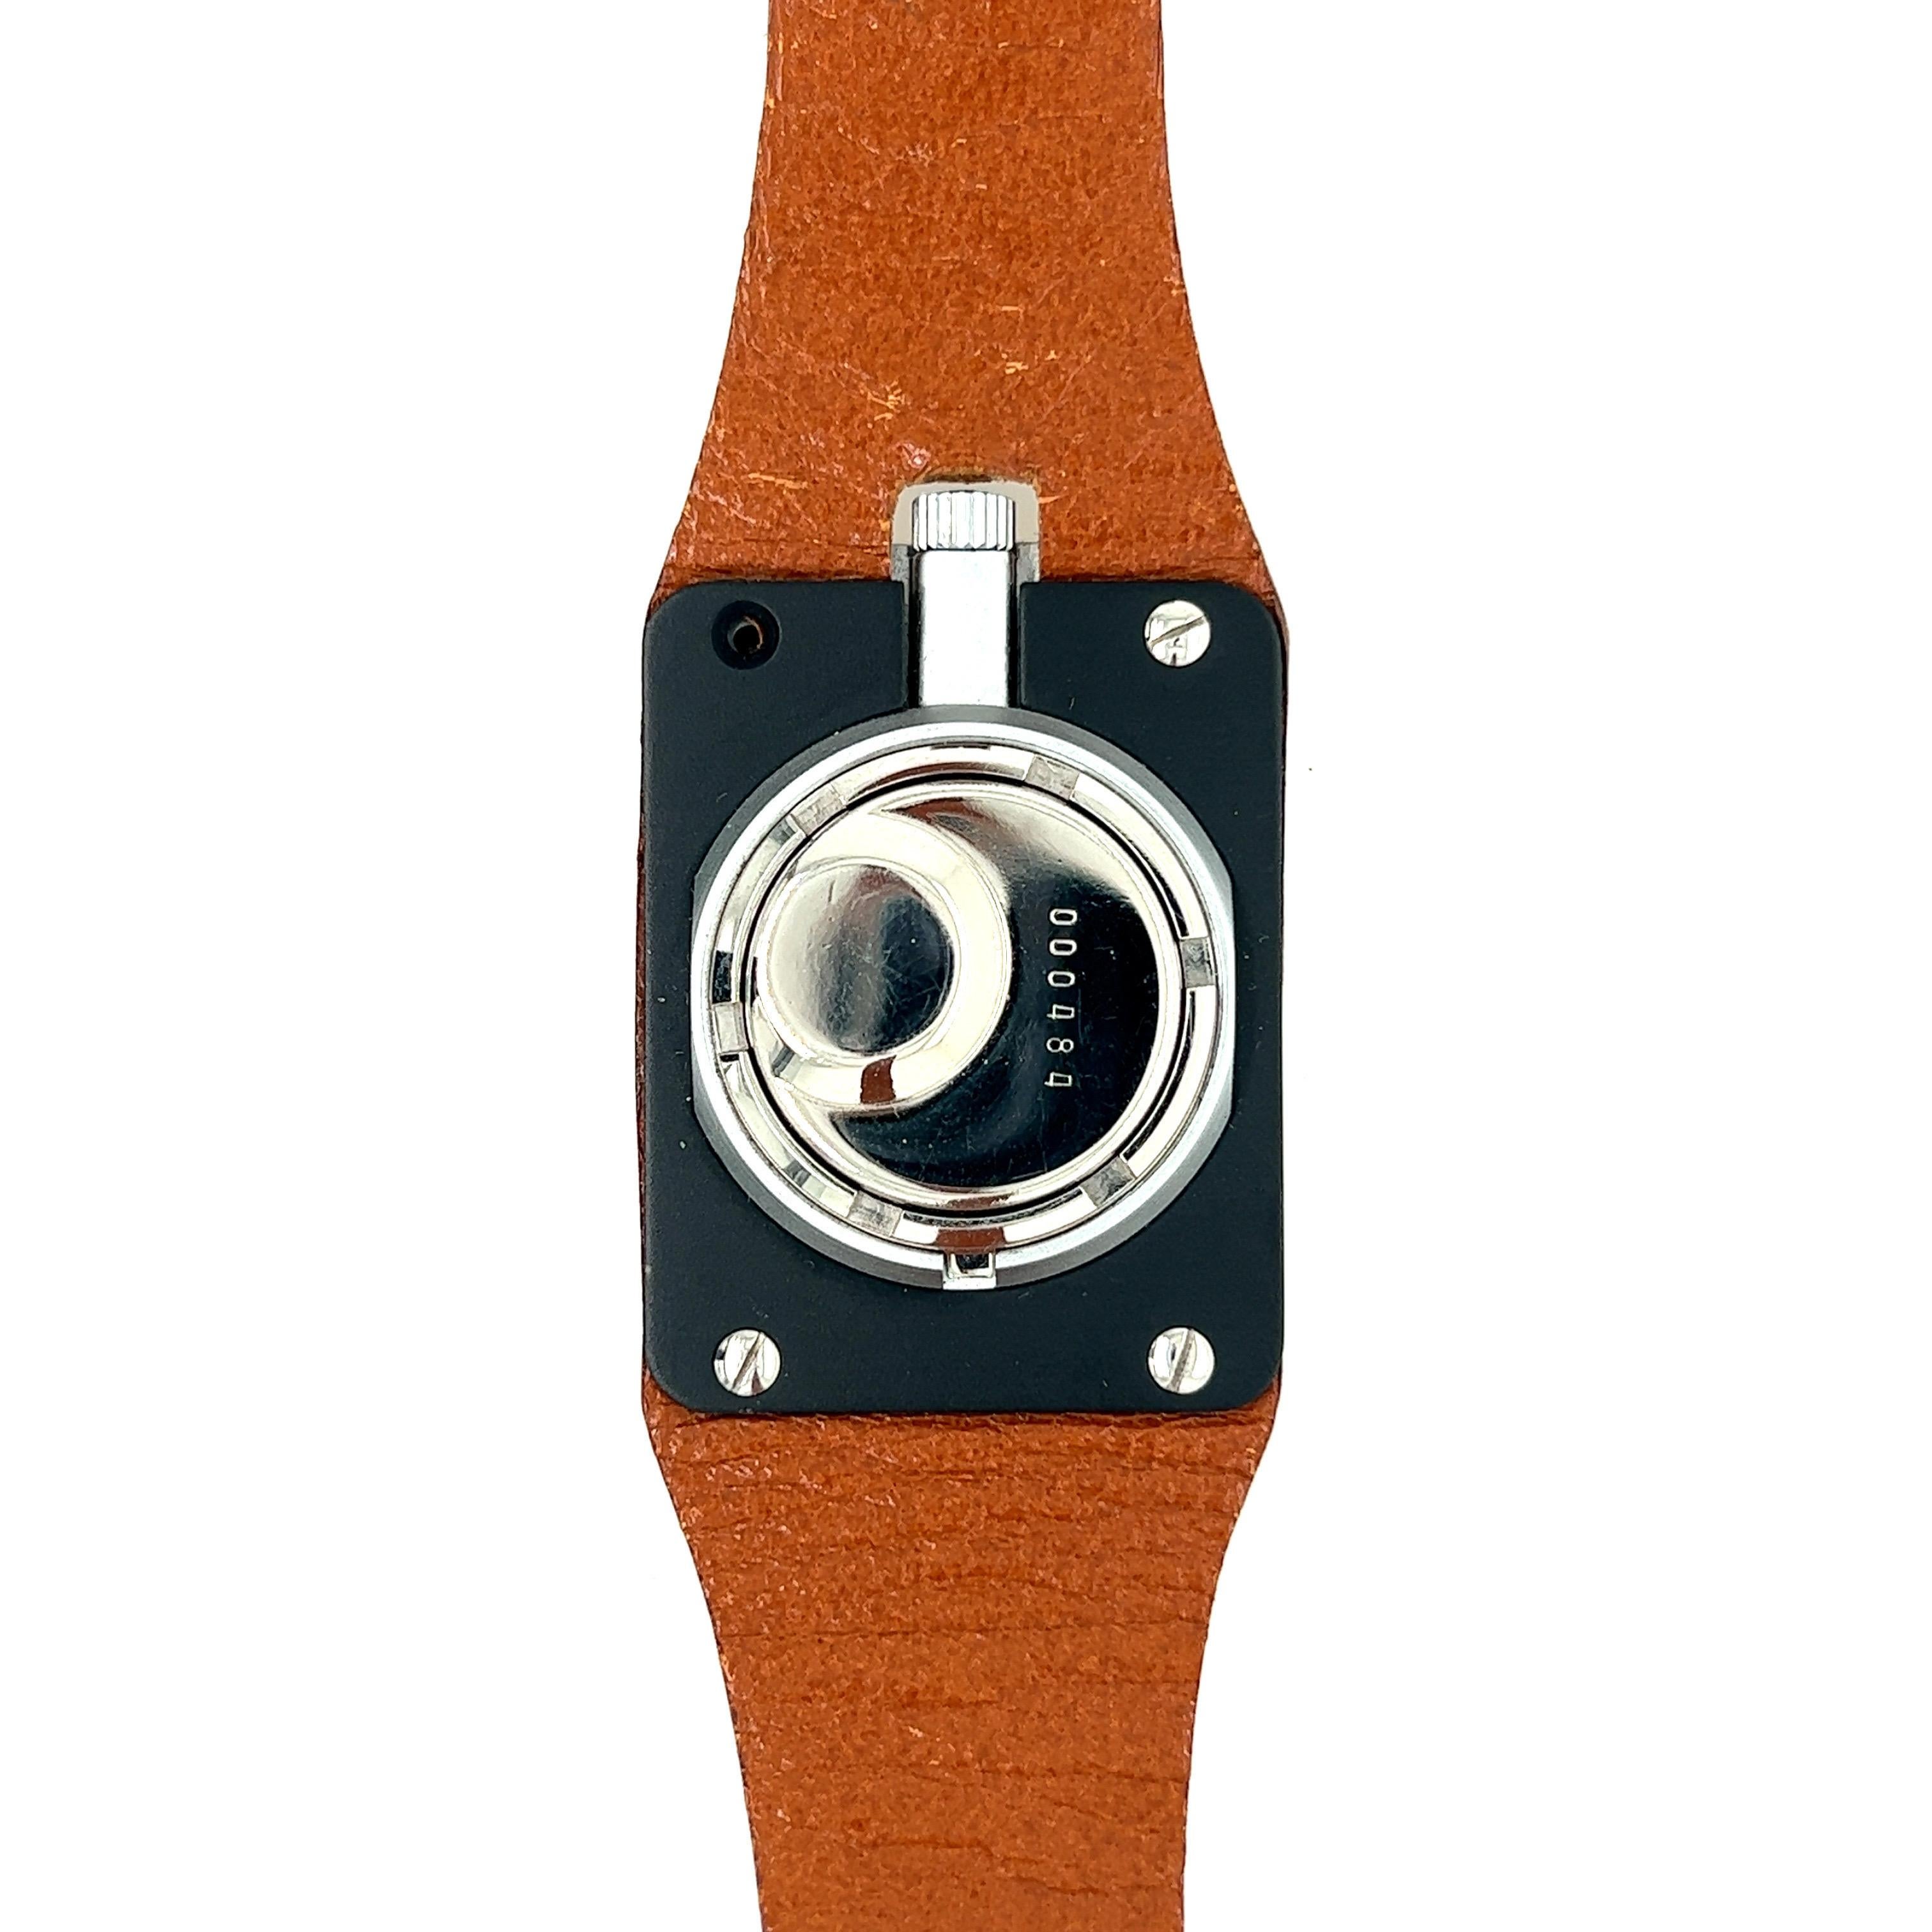 LIP Montre Femme Bracelet Marron Cadran Blanc

Cette montre rétro Lip Frigidaire, conçue par Roger Heel en 1976, est un véritable témoignage de son époque. Dotée d'un bracelet en cuir marron de haute qualité, de fonctions pour les heures, les